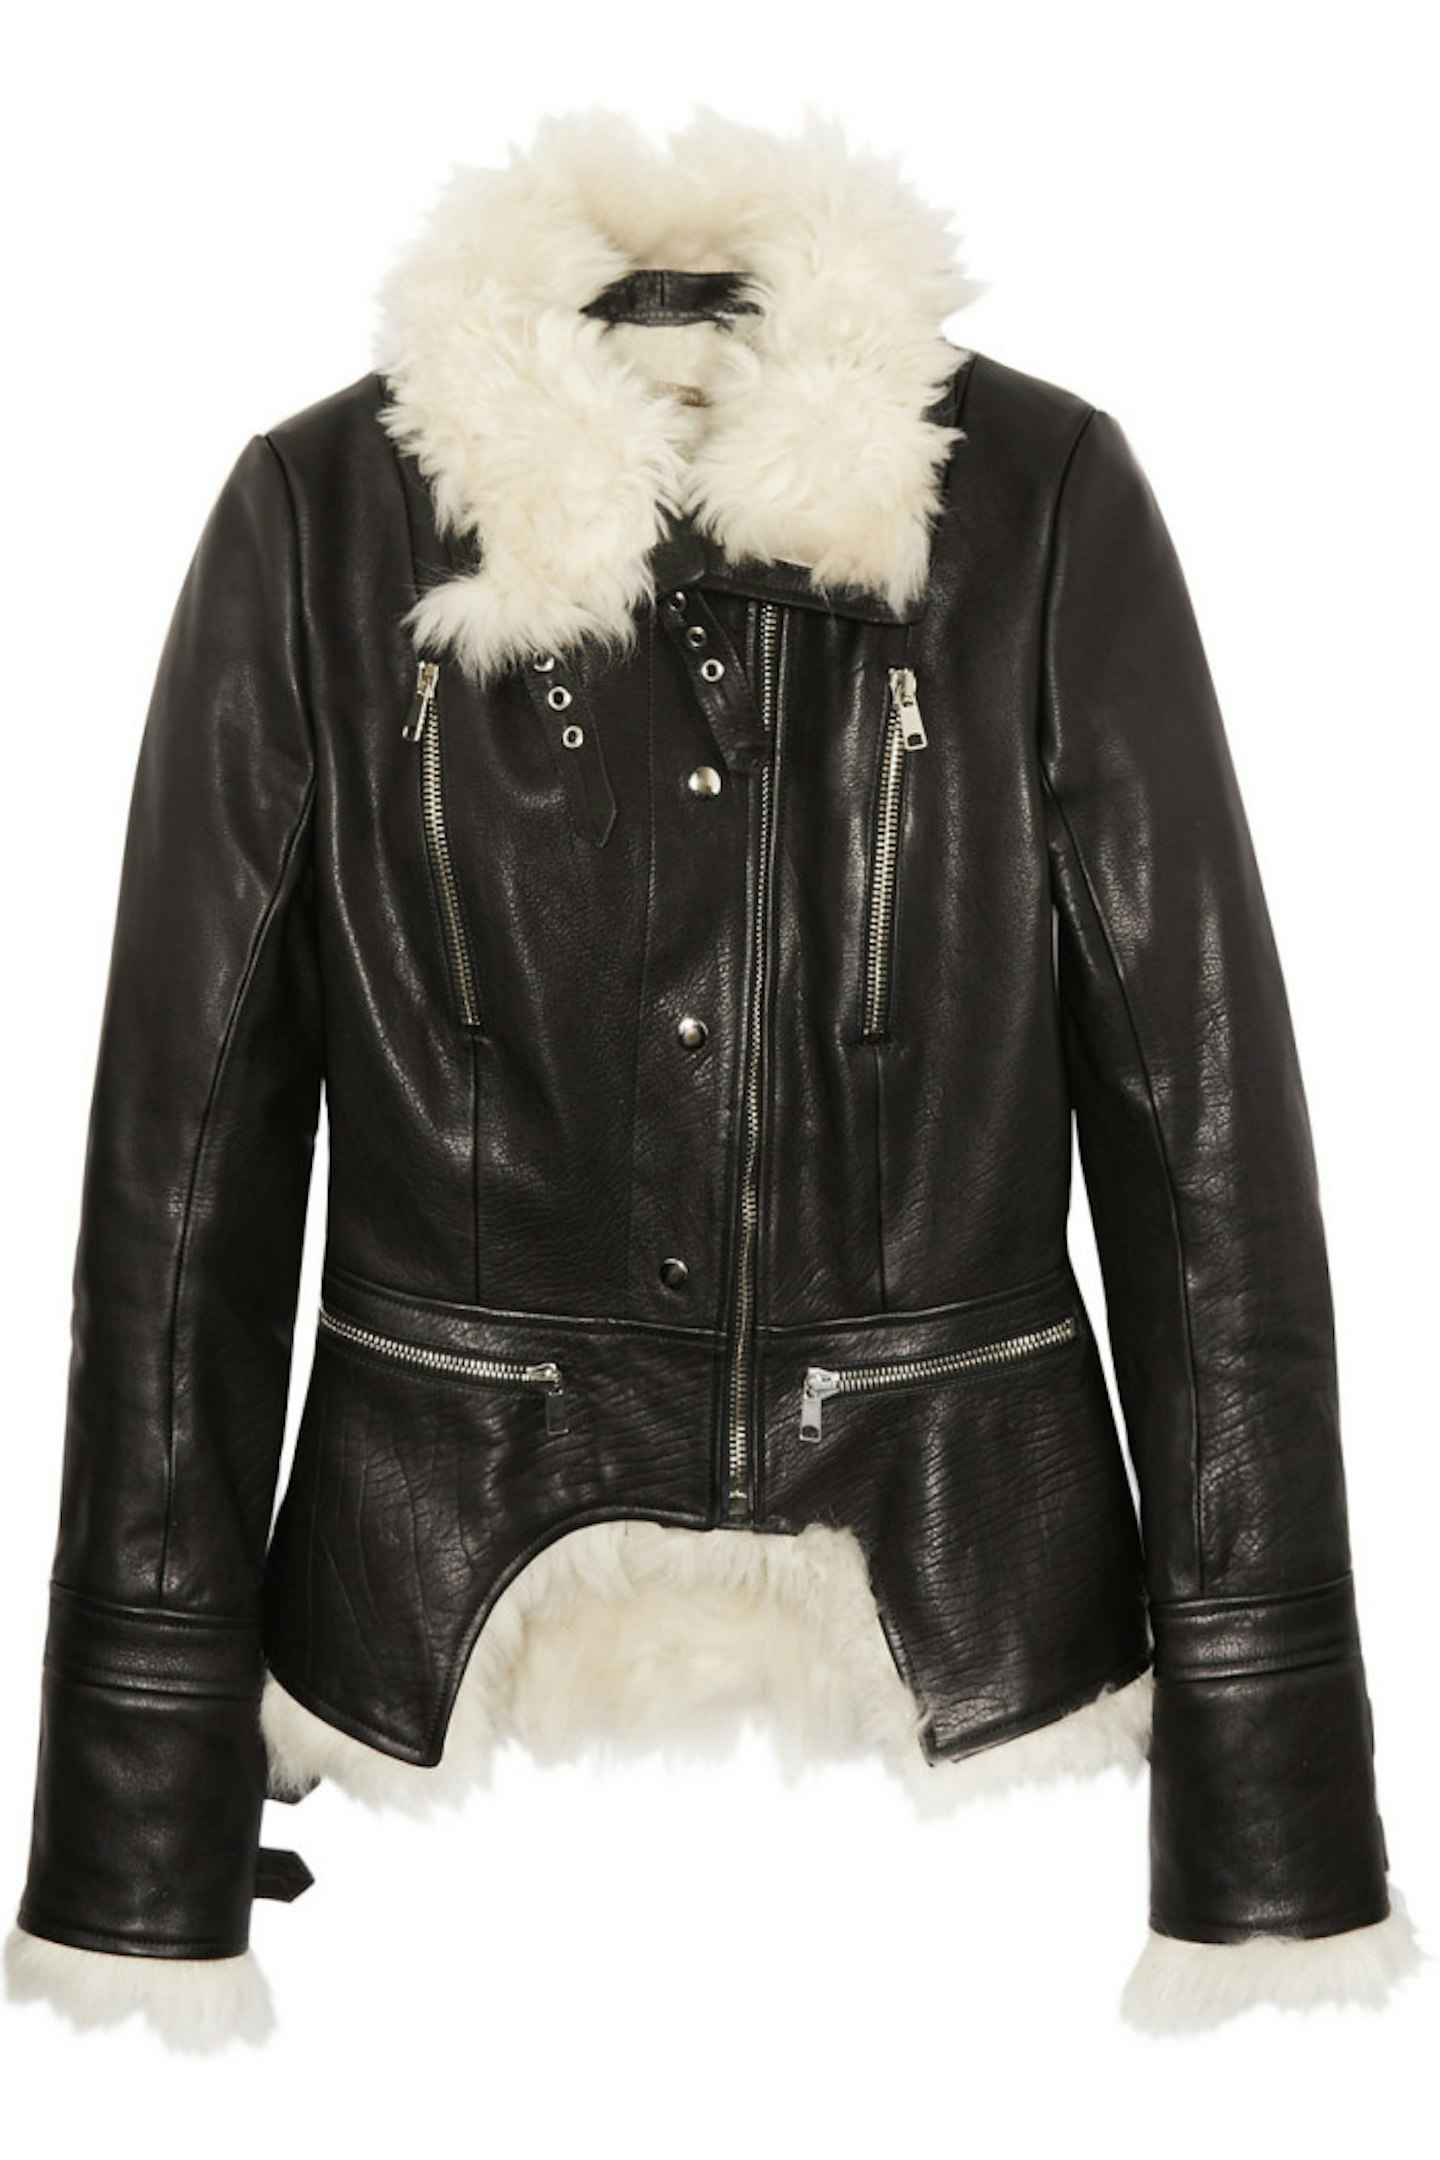 Alexander McQueen Leather Jacket, £3,785.00